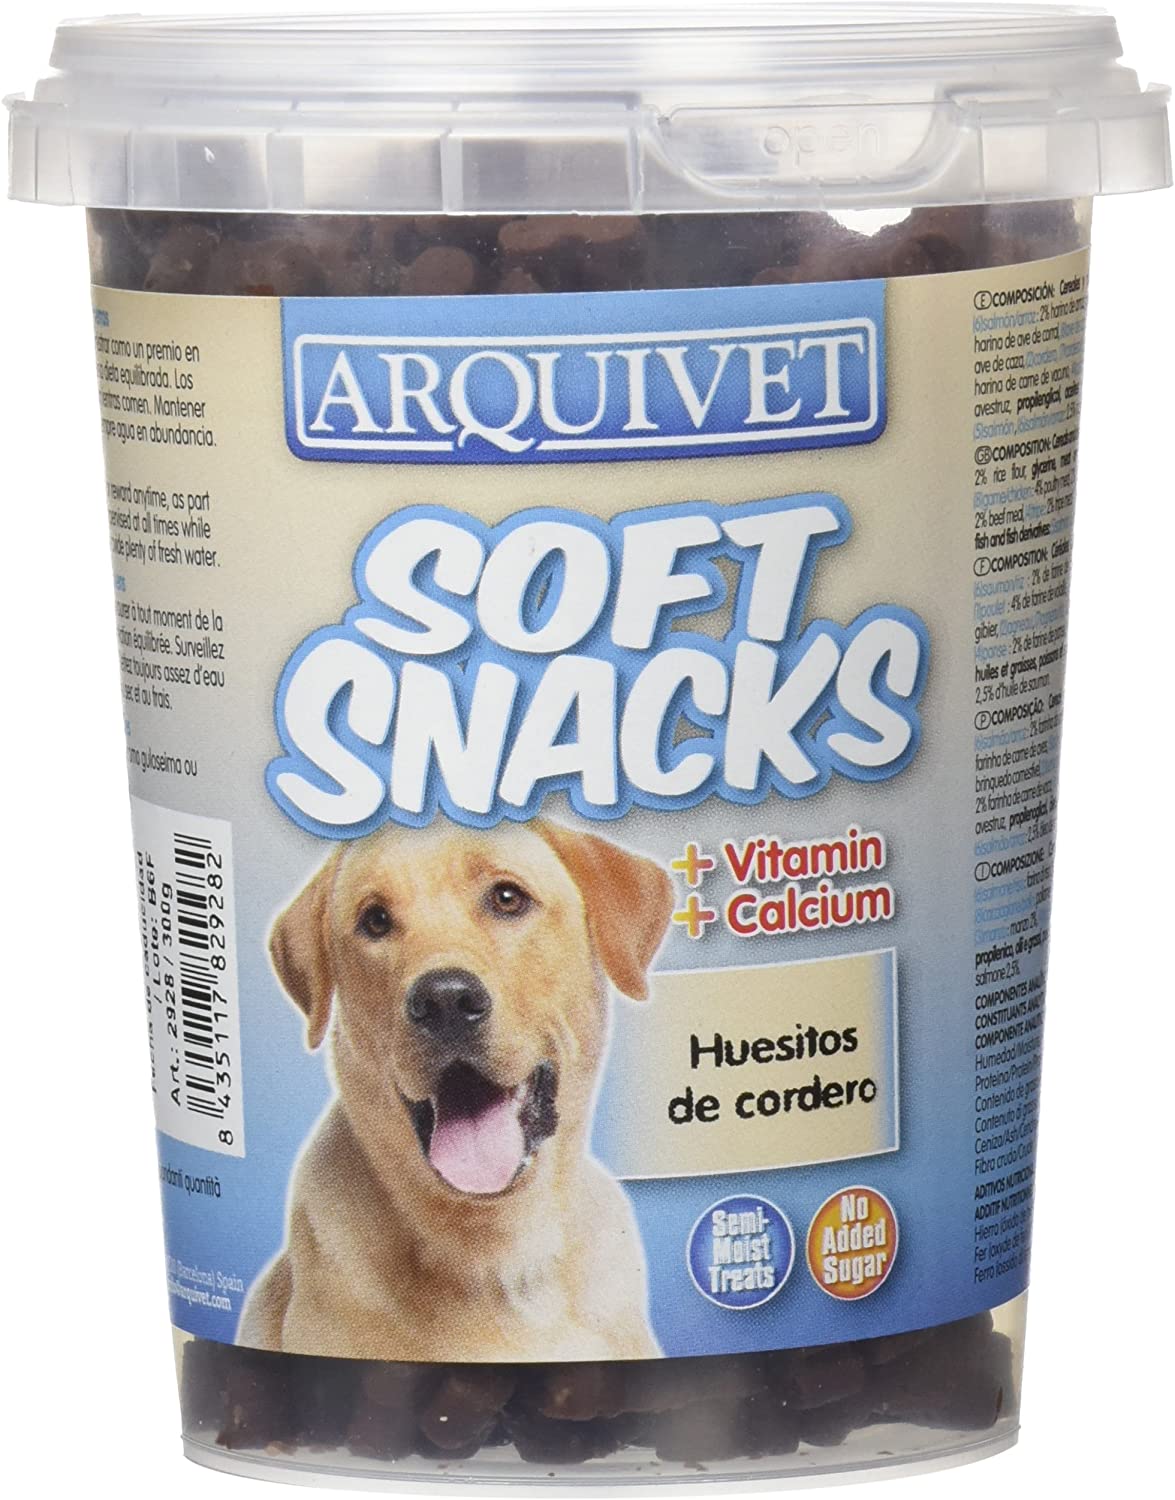  Arquivet Soft Snacks huesitos Cordero 300 grs - 340 gr 